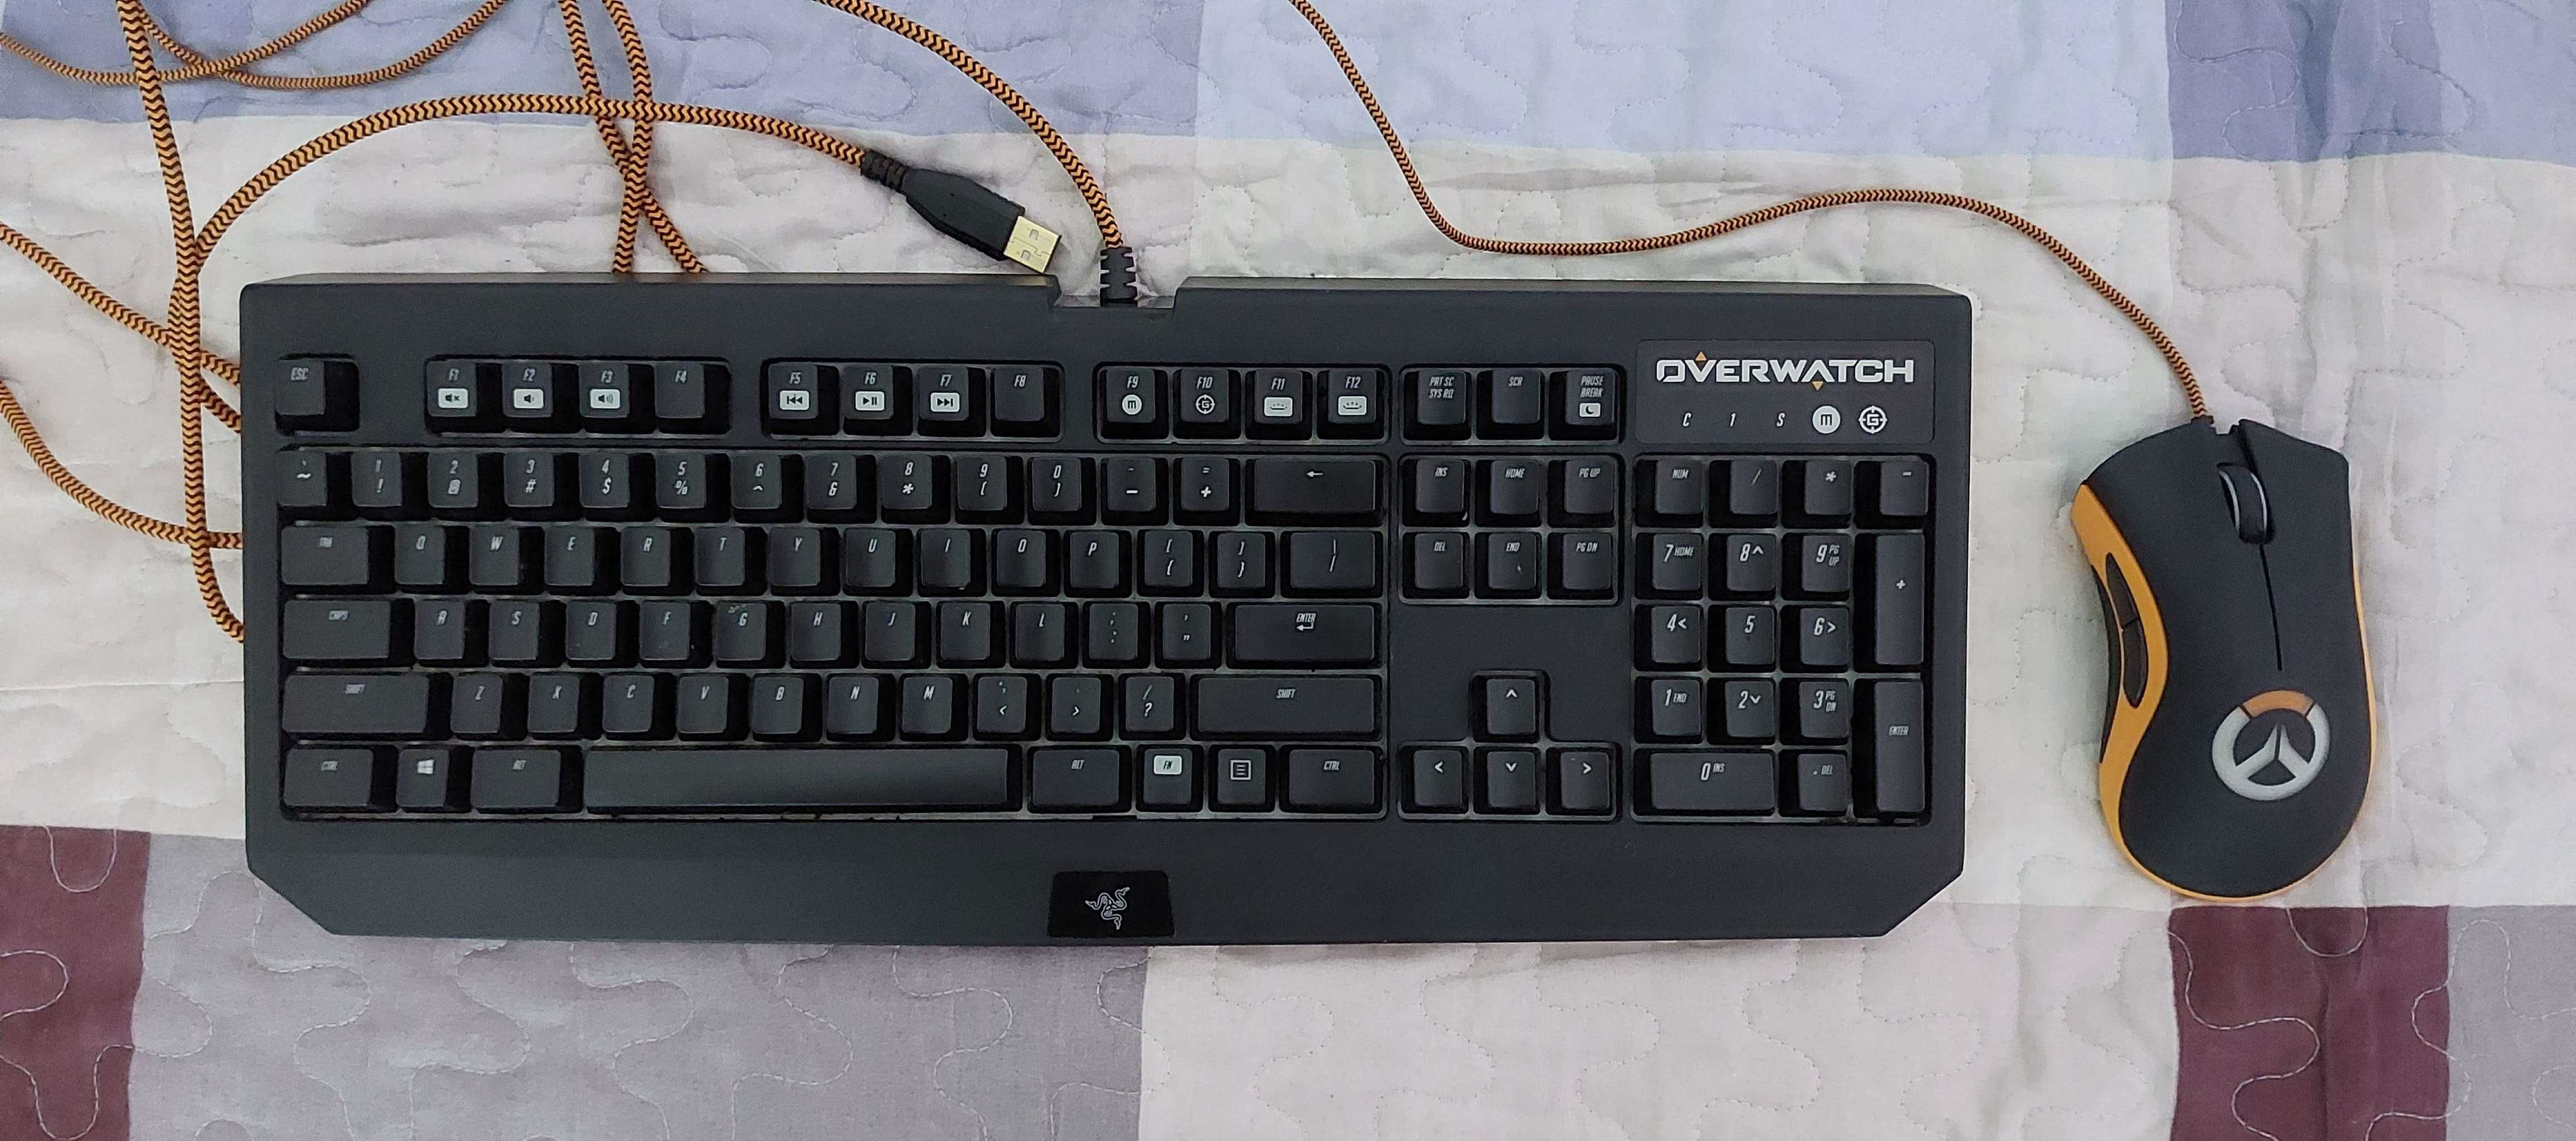 Kit:Mouse Razer Deathadder Chroma + Tastatura Razer Blackwidow Chroma